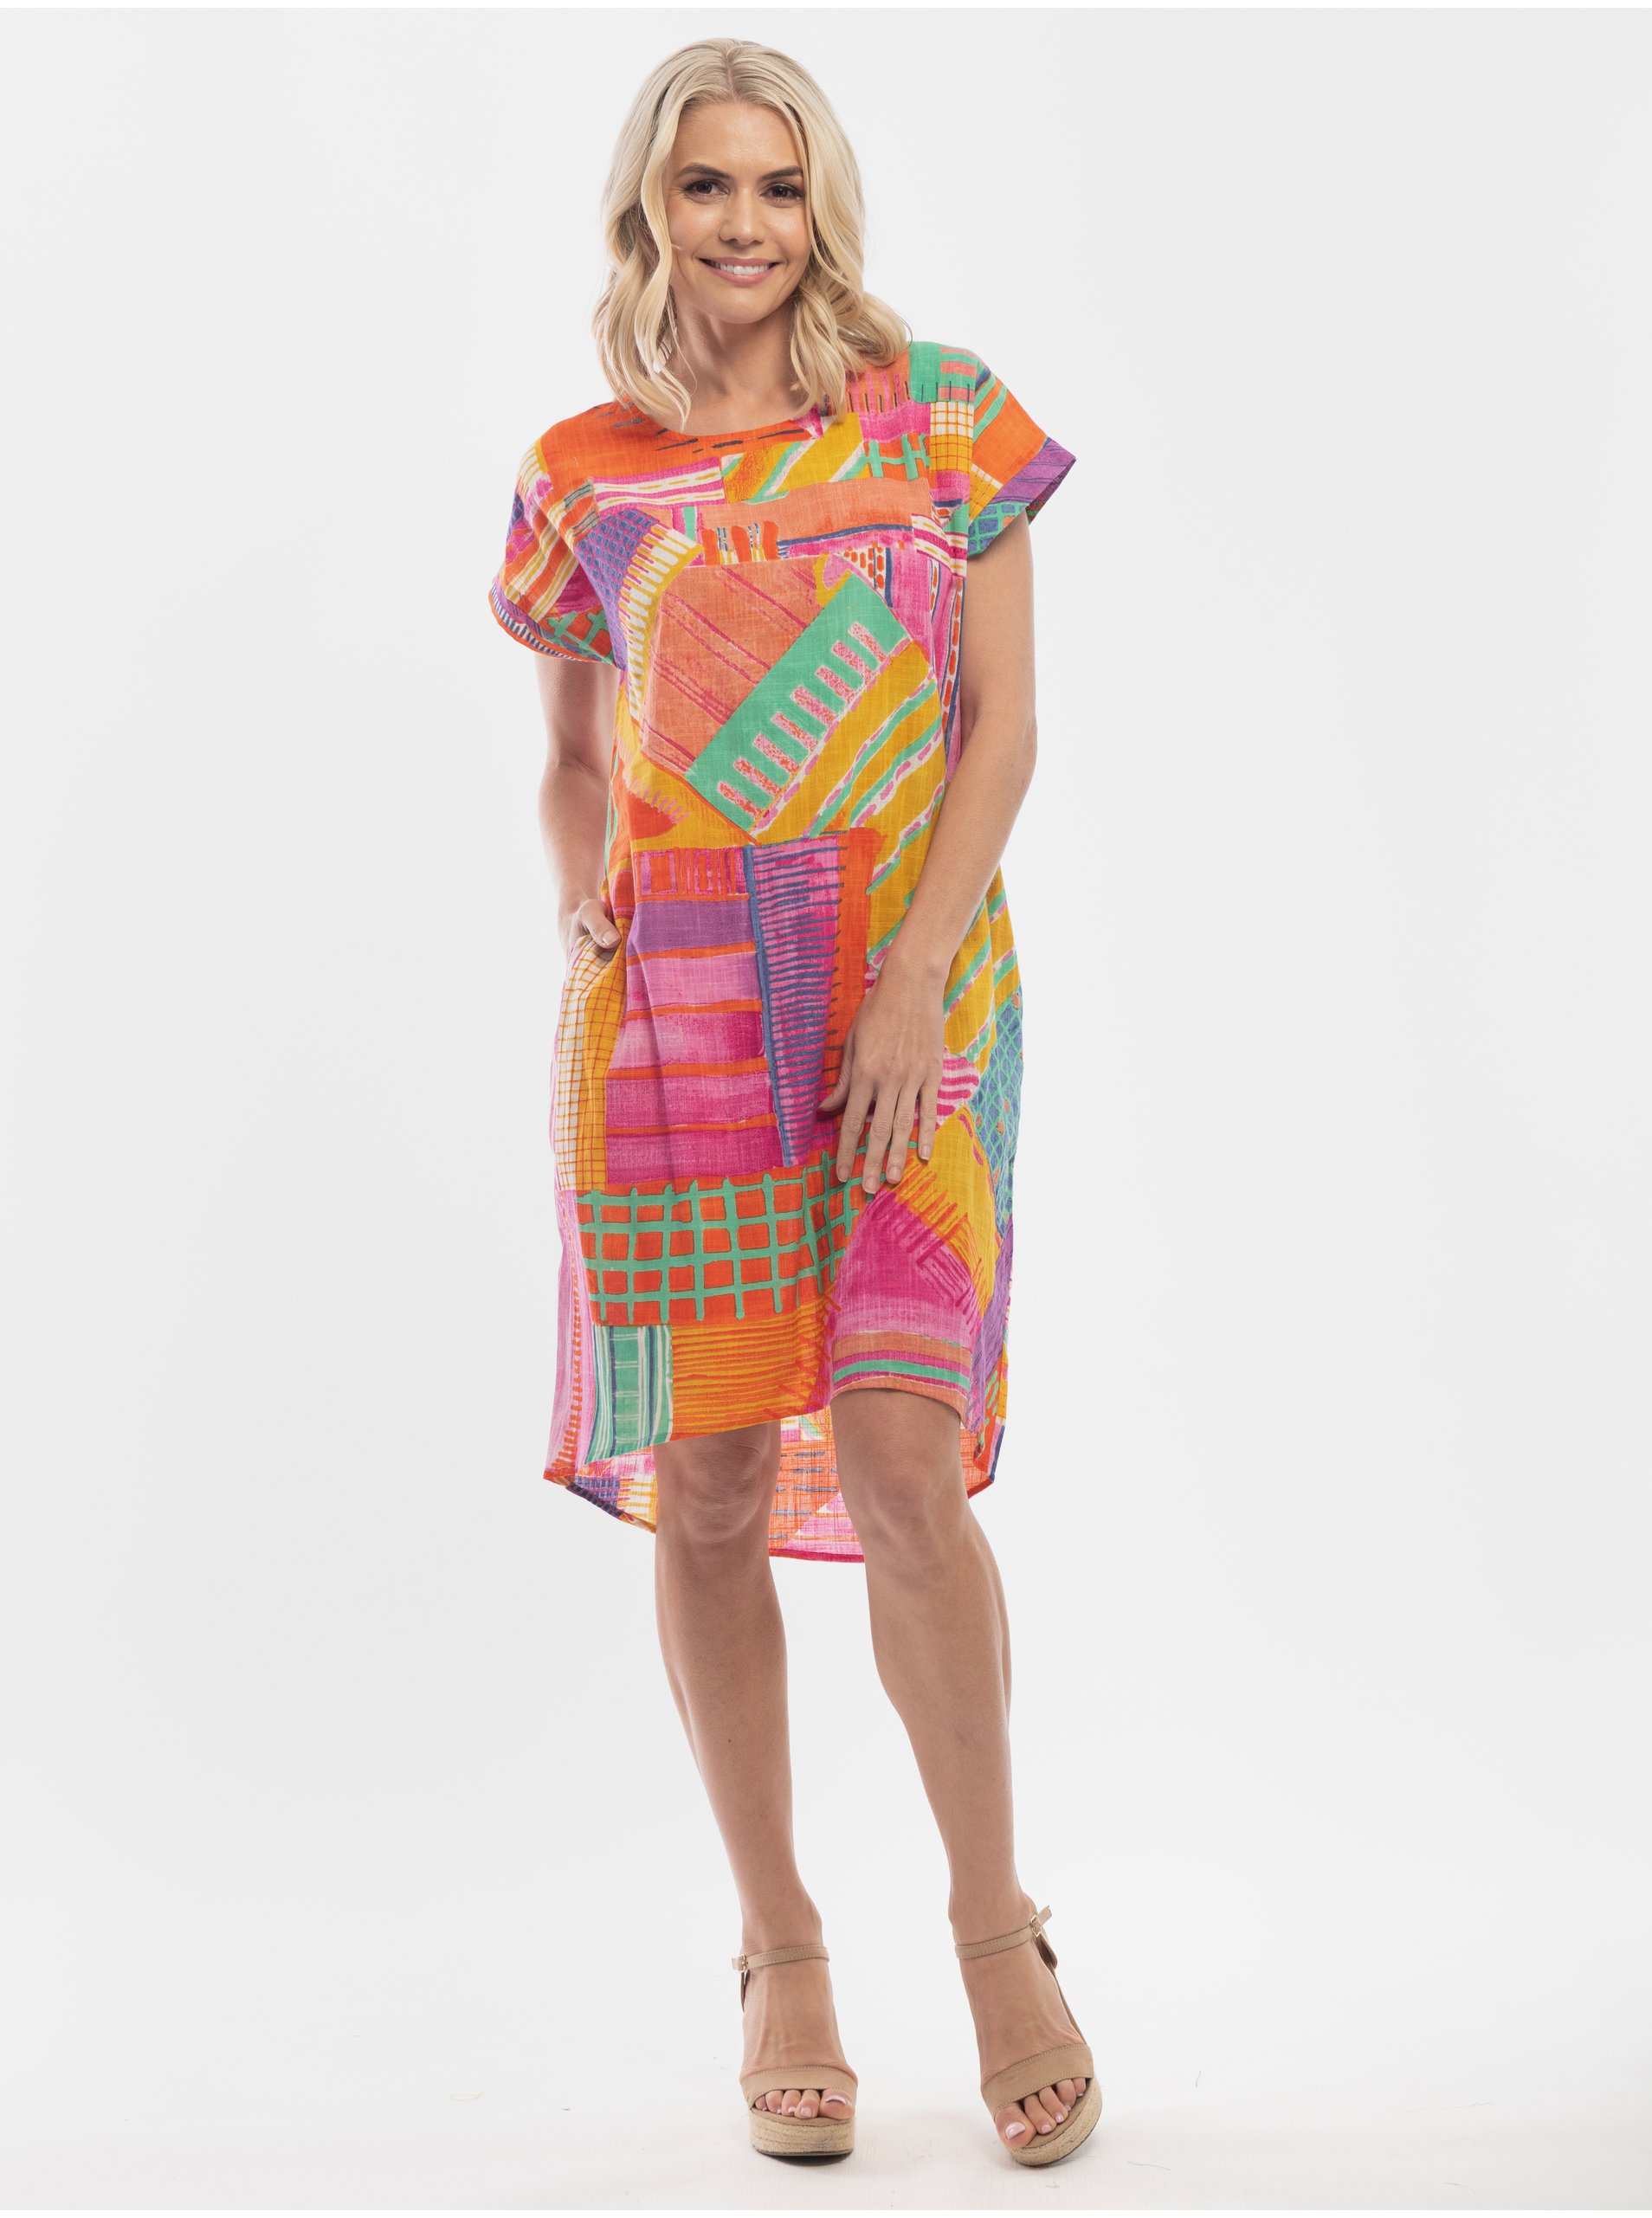 Lacno Letné a plážové šaty pre ženy Orientique - oranžová, ružová, fialová, tyrkysová